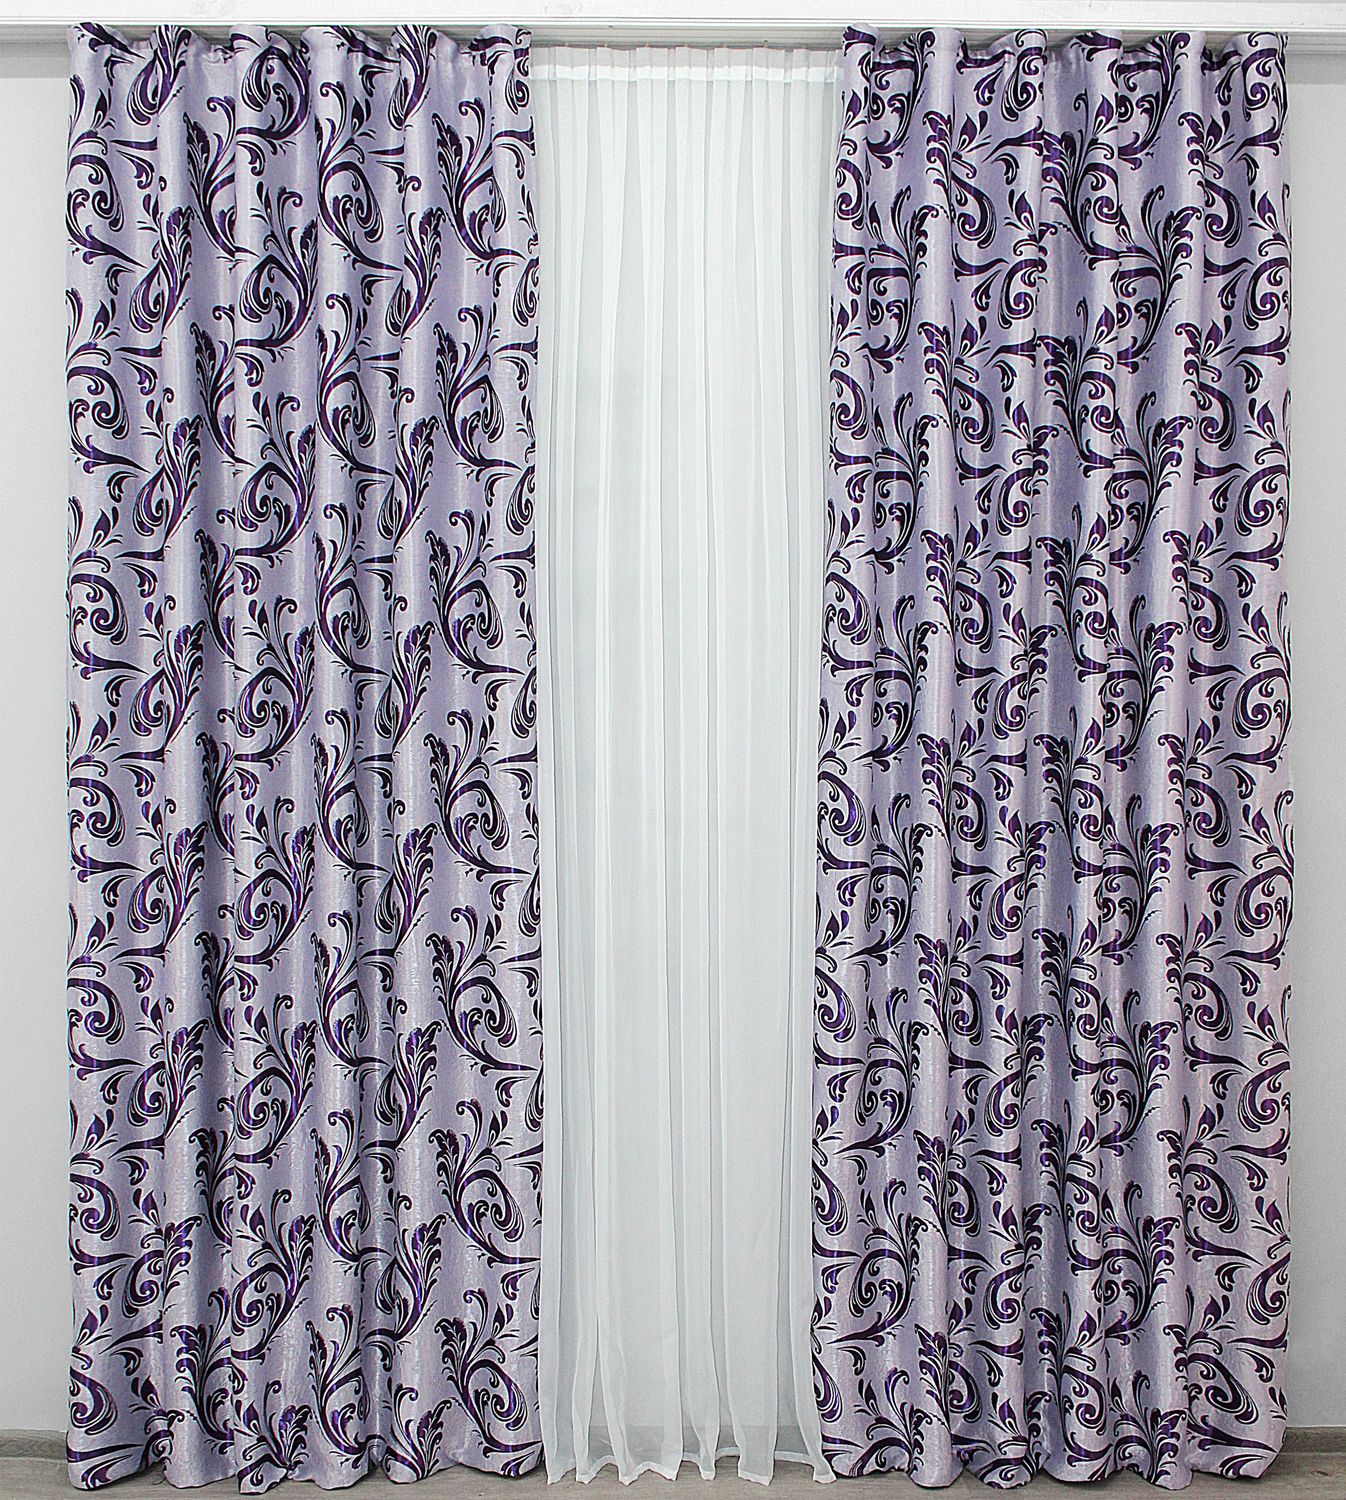 Комплект штор, из ткани блэкаут-софт коллекция "Лилия" цвет фиолетовый 290ш (Б), Сиреневый, Комплект штор (2шт. 1,0х2,7м.), 1 м., 2,7 м., 100, 270, 1 - 2 м., В комплекте 2 шт., Тесьма